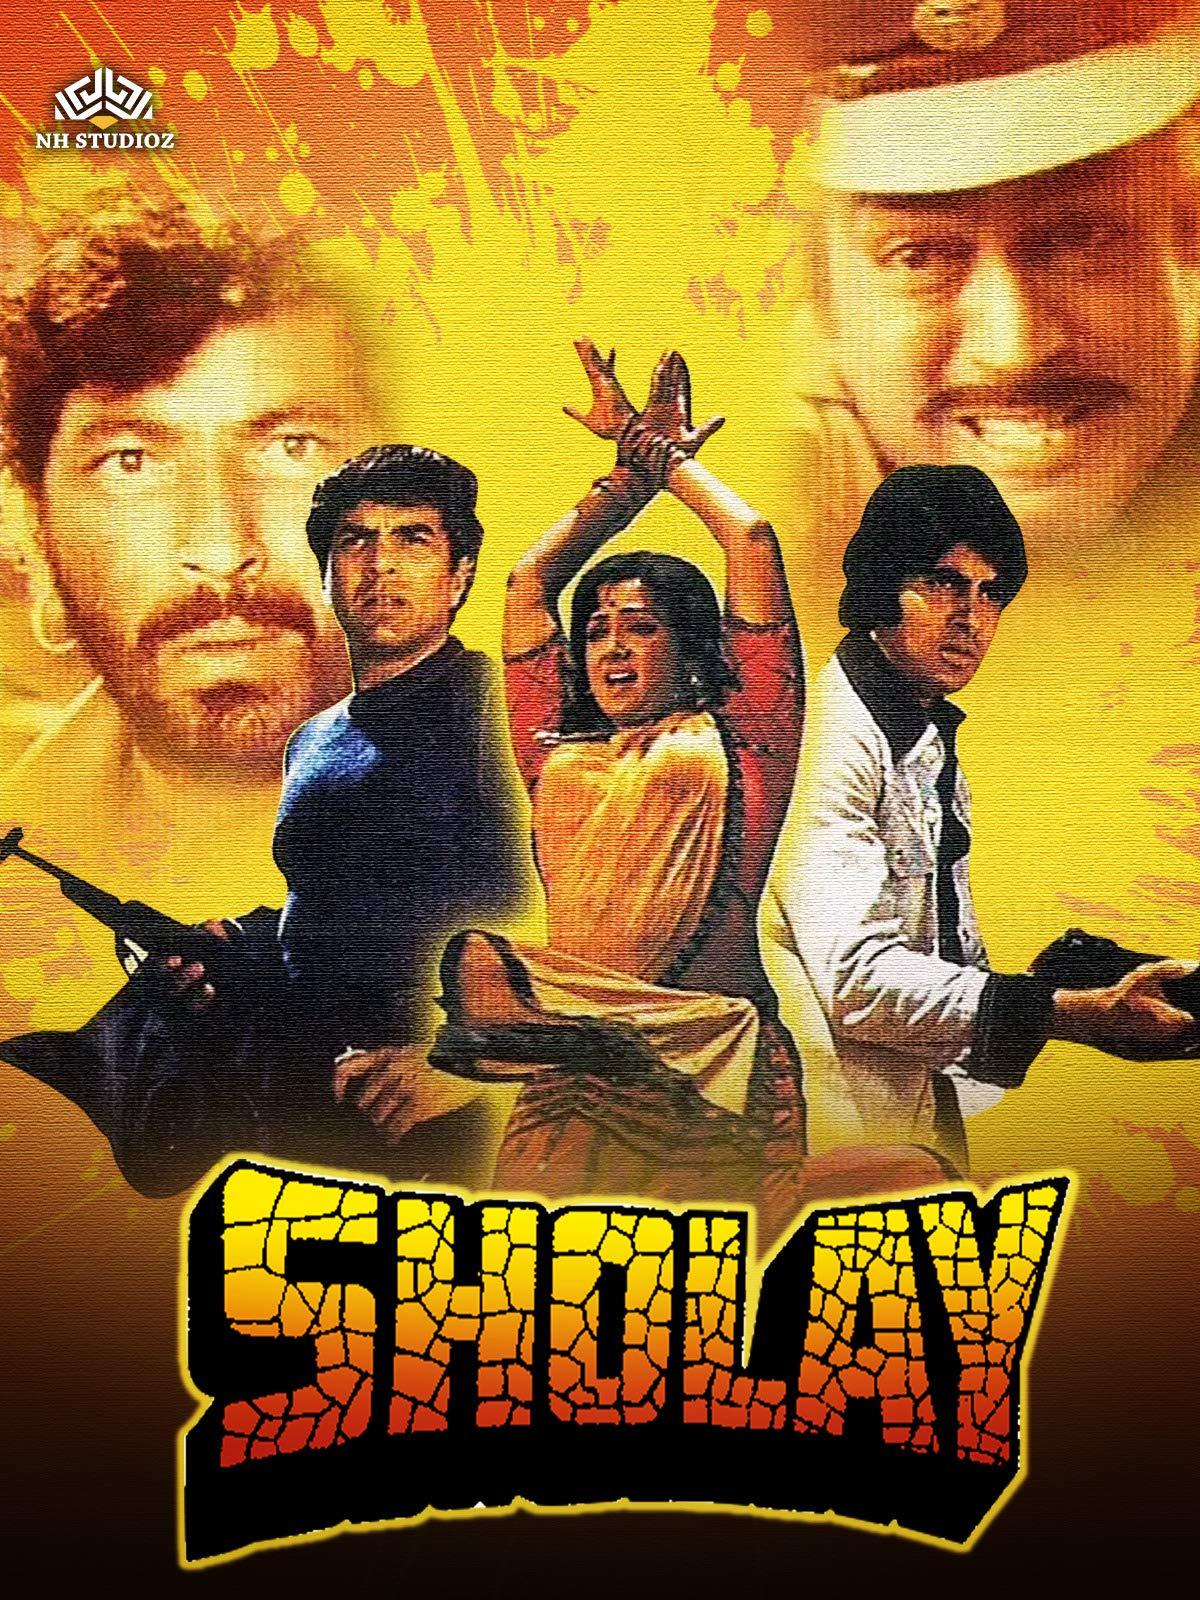 sholay malayalam movie review